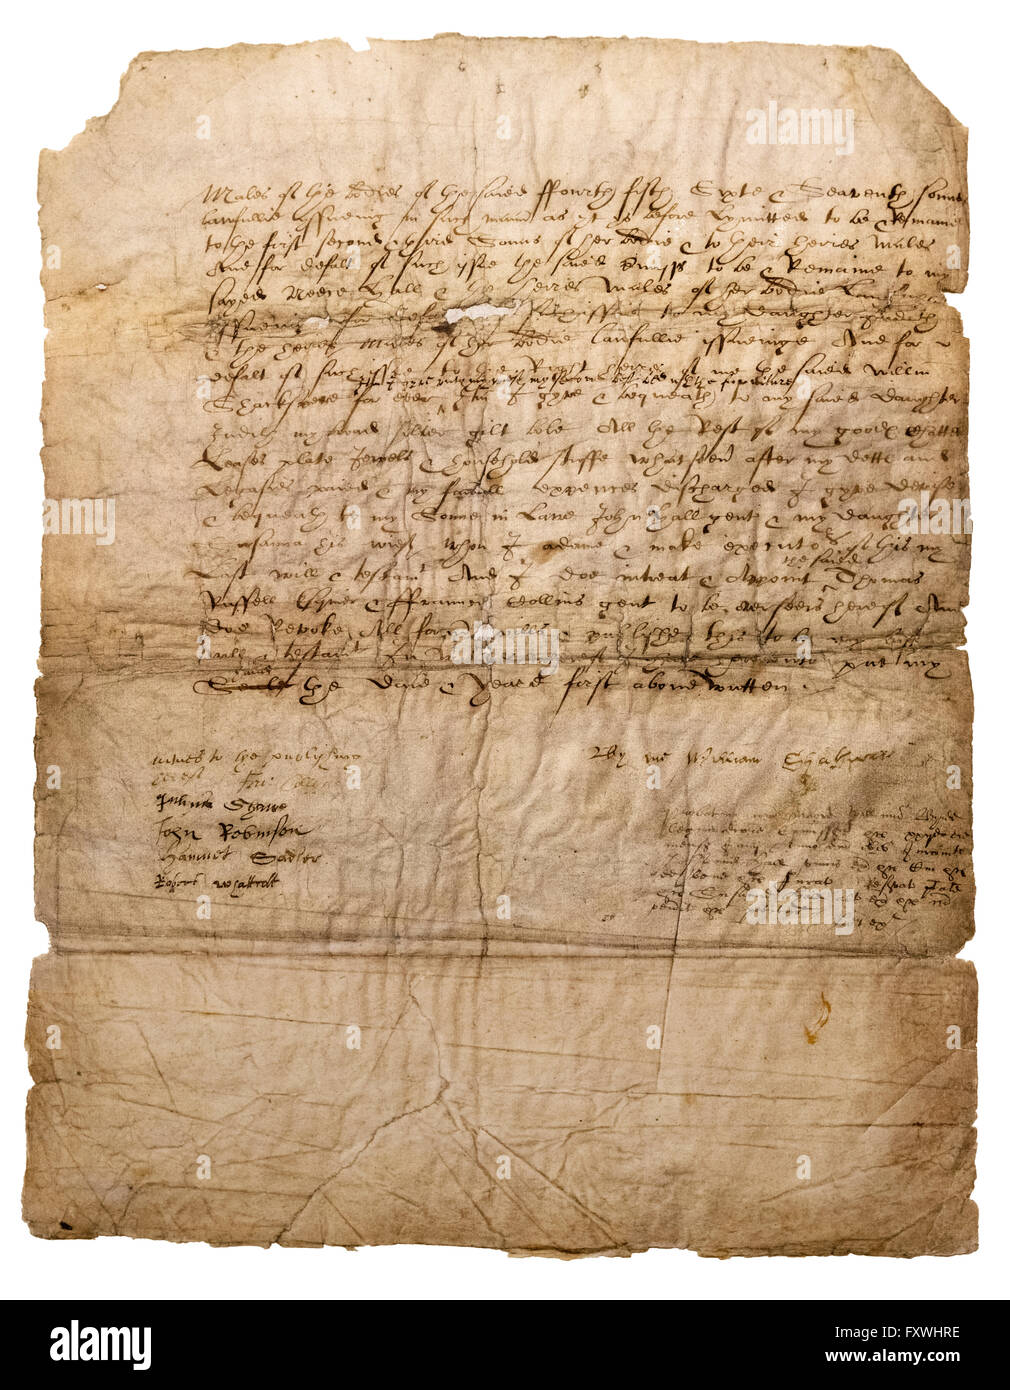 Shakespeares letzten Willen und Testament (Seite 3 von 3). Seine Unterschrift auf der unteren rechten Ecke des der Wille ist eines der wenigen erhaltenen Beispiele. Stockfoto